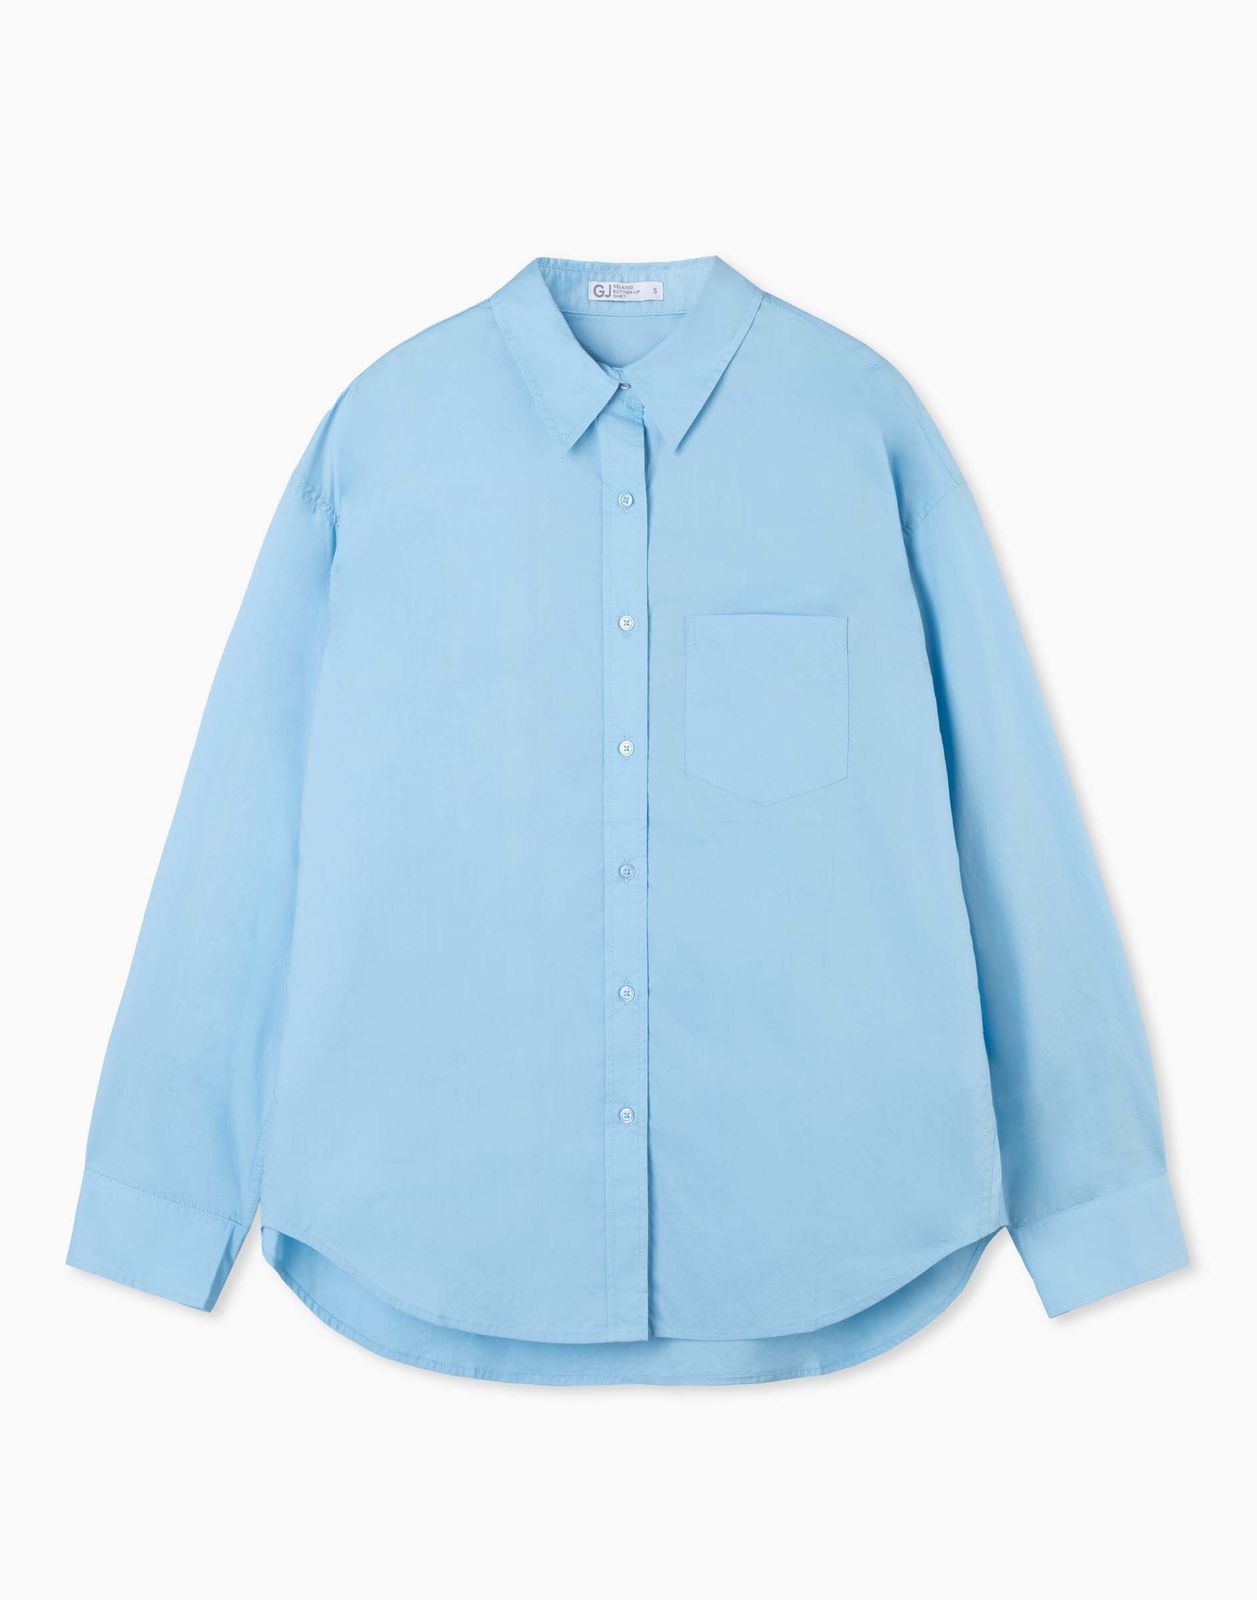 Рубашка женская Gloria Jeans GWT003563 голубой M/170